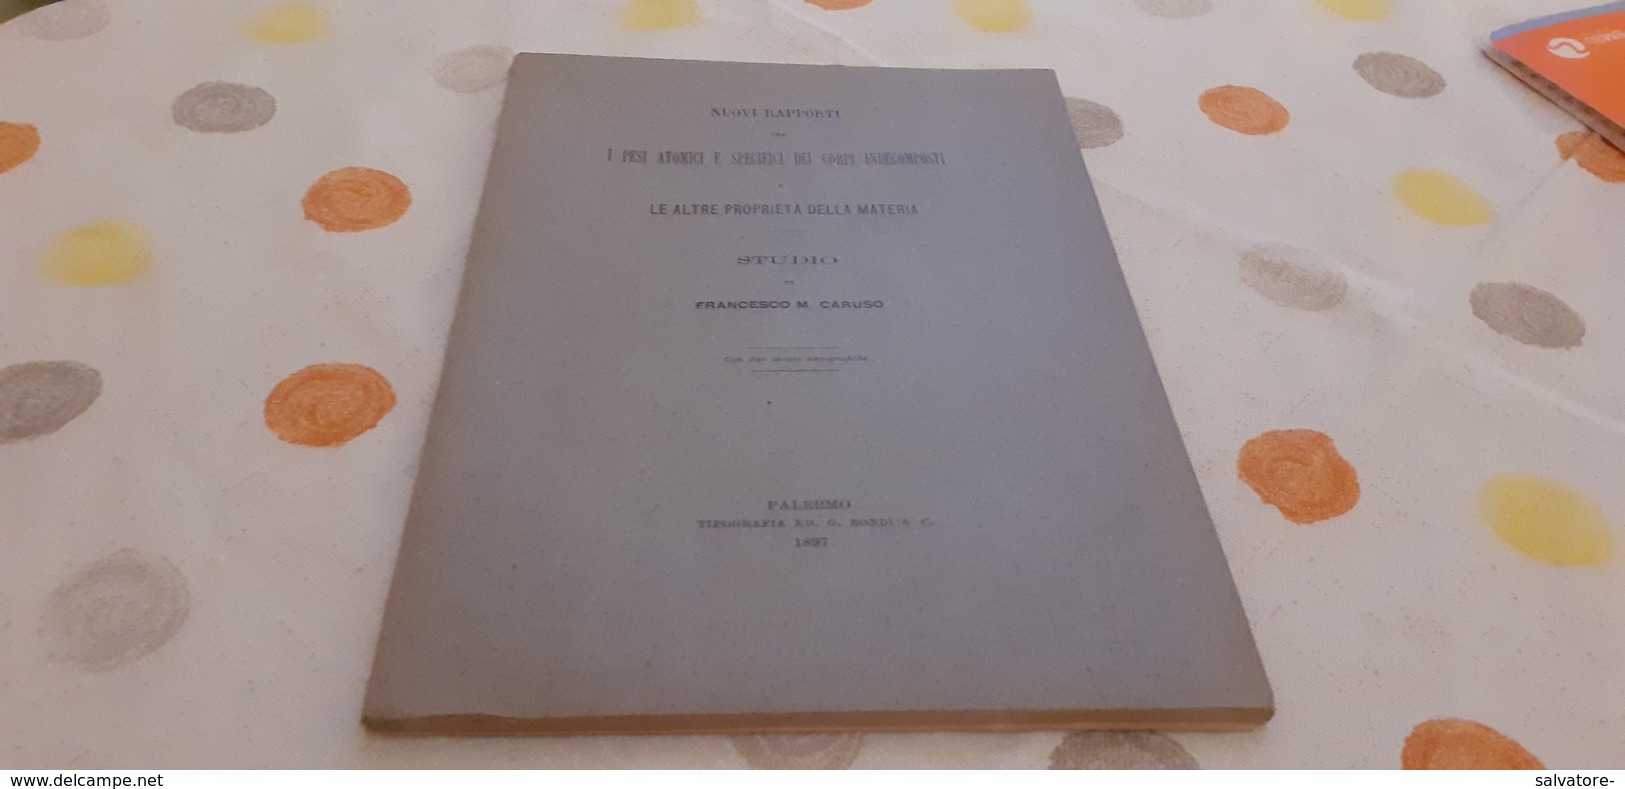 NUOVI RAPPORTI - I PESI ATOMICI E SPECIFICI DEI CORPI INDECOMPOSTI- F. CARUSO 1897 - Mathematics & Physics